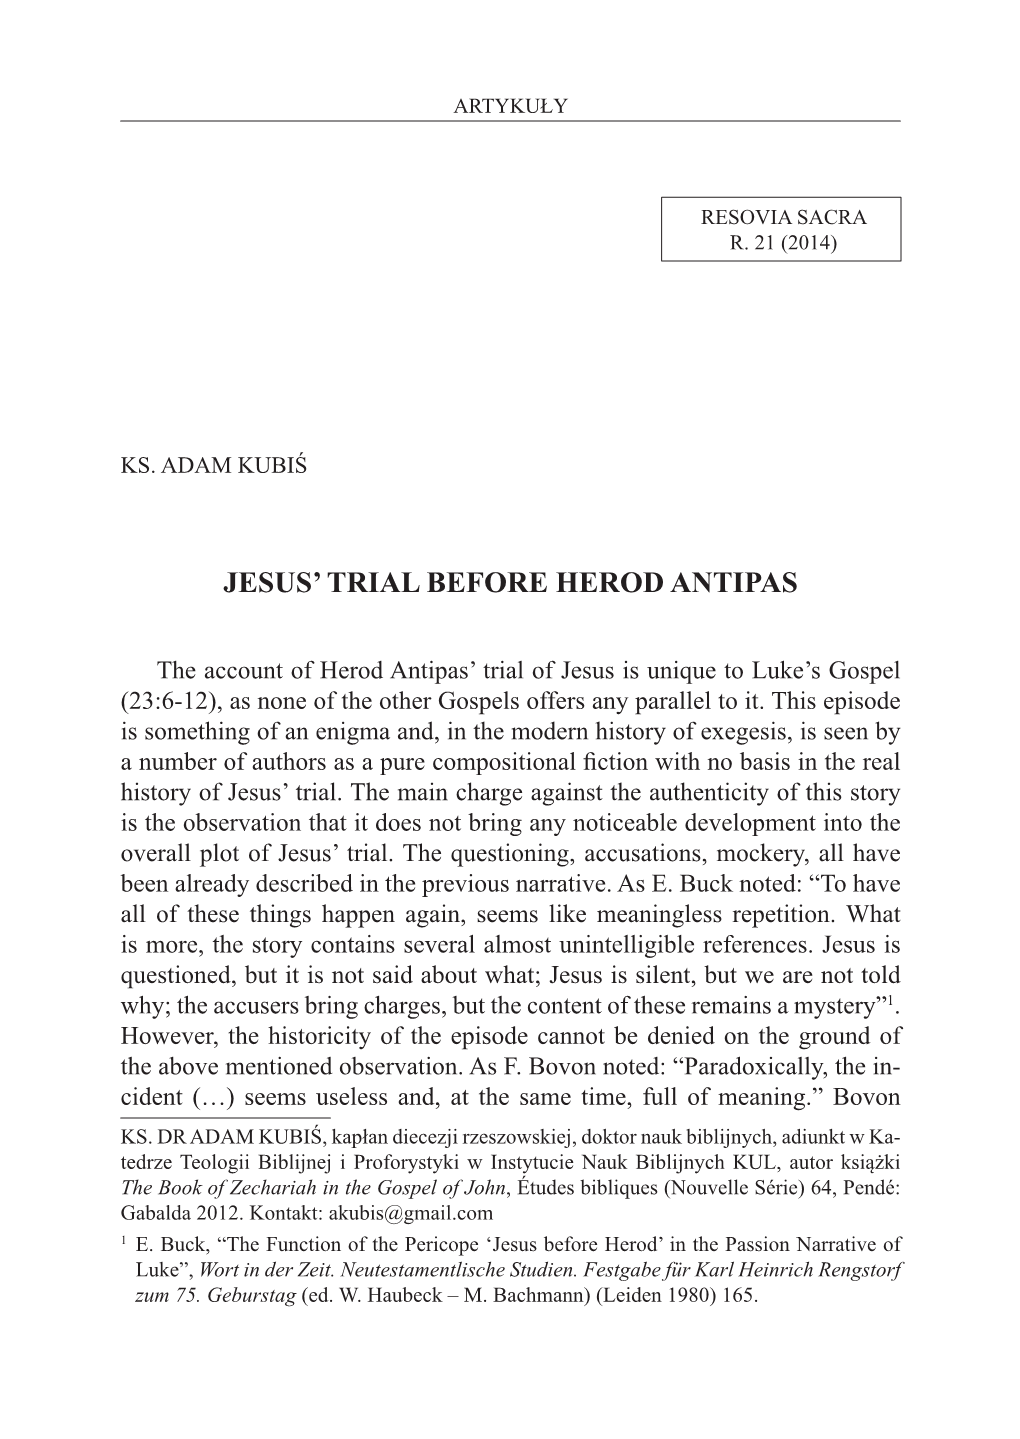 Jesus' T Rial Before Herod Antipas